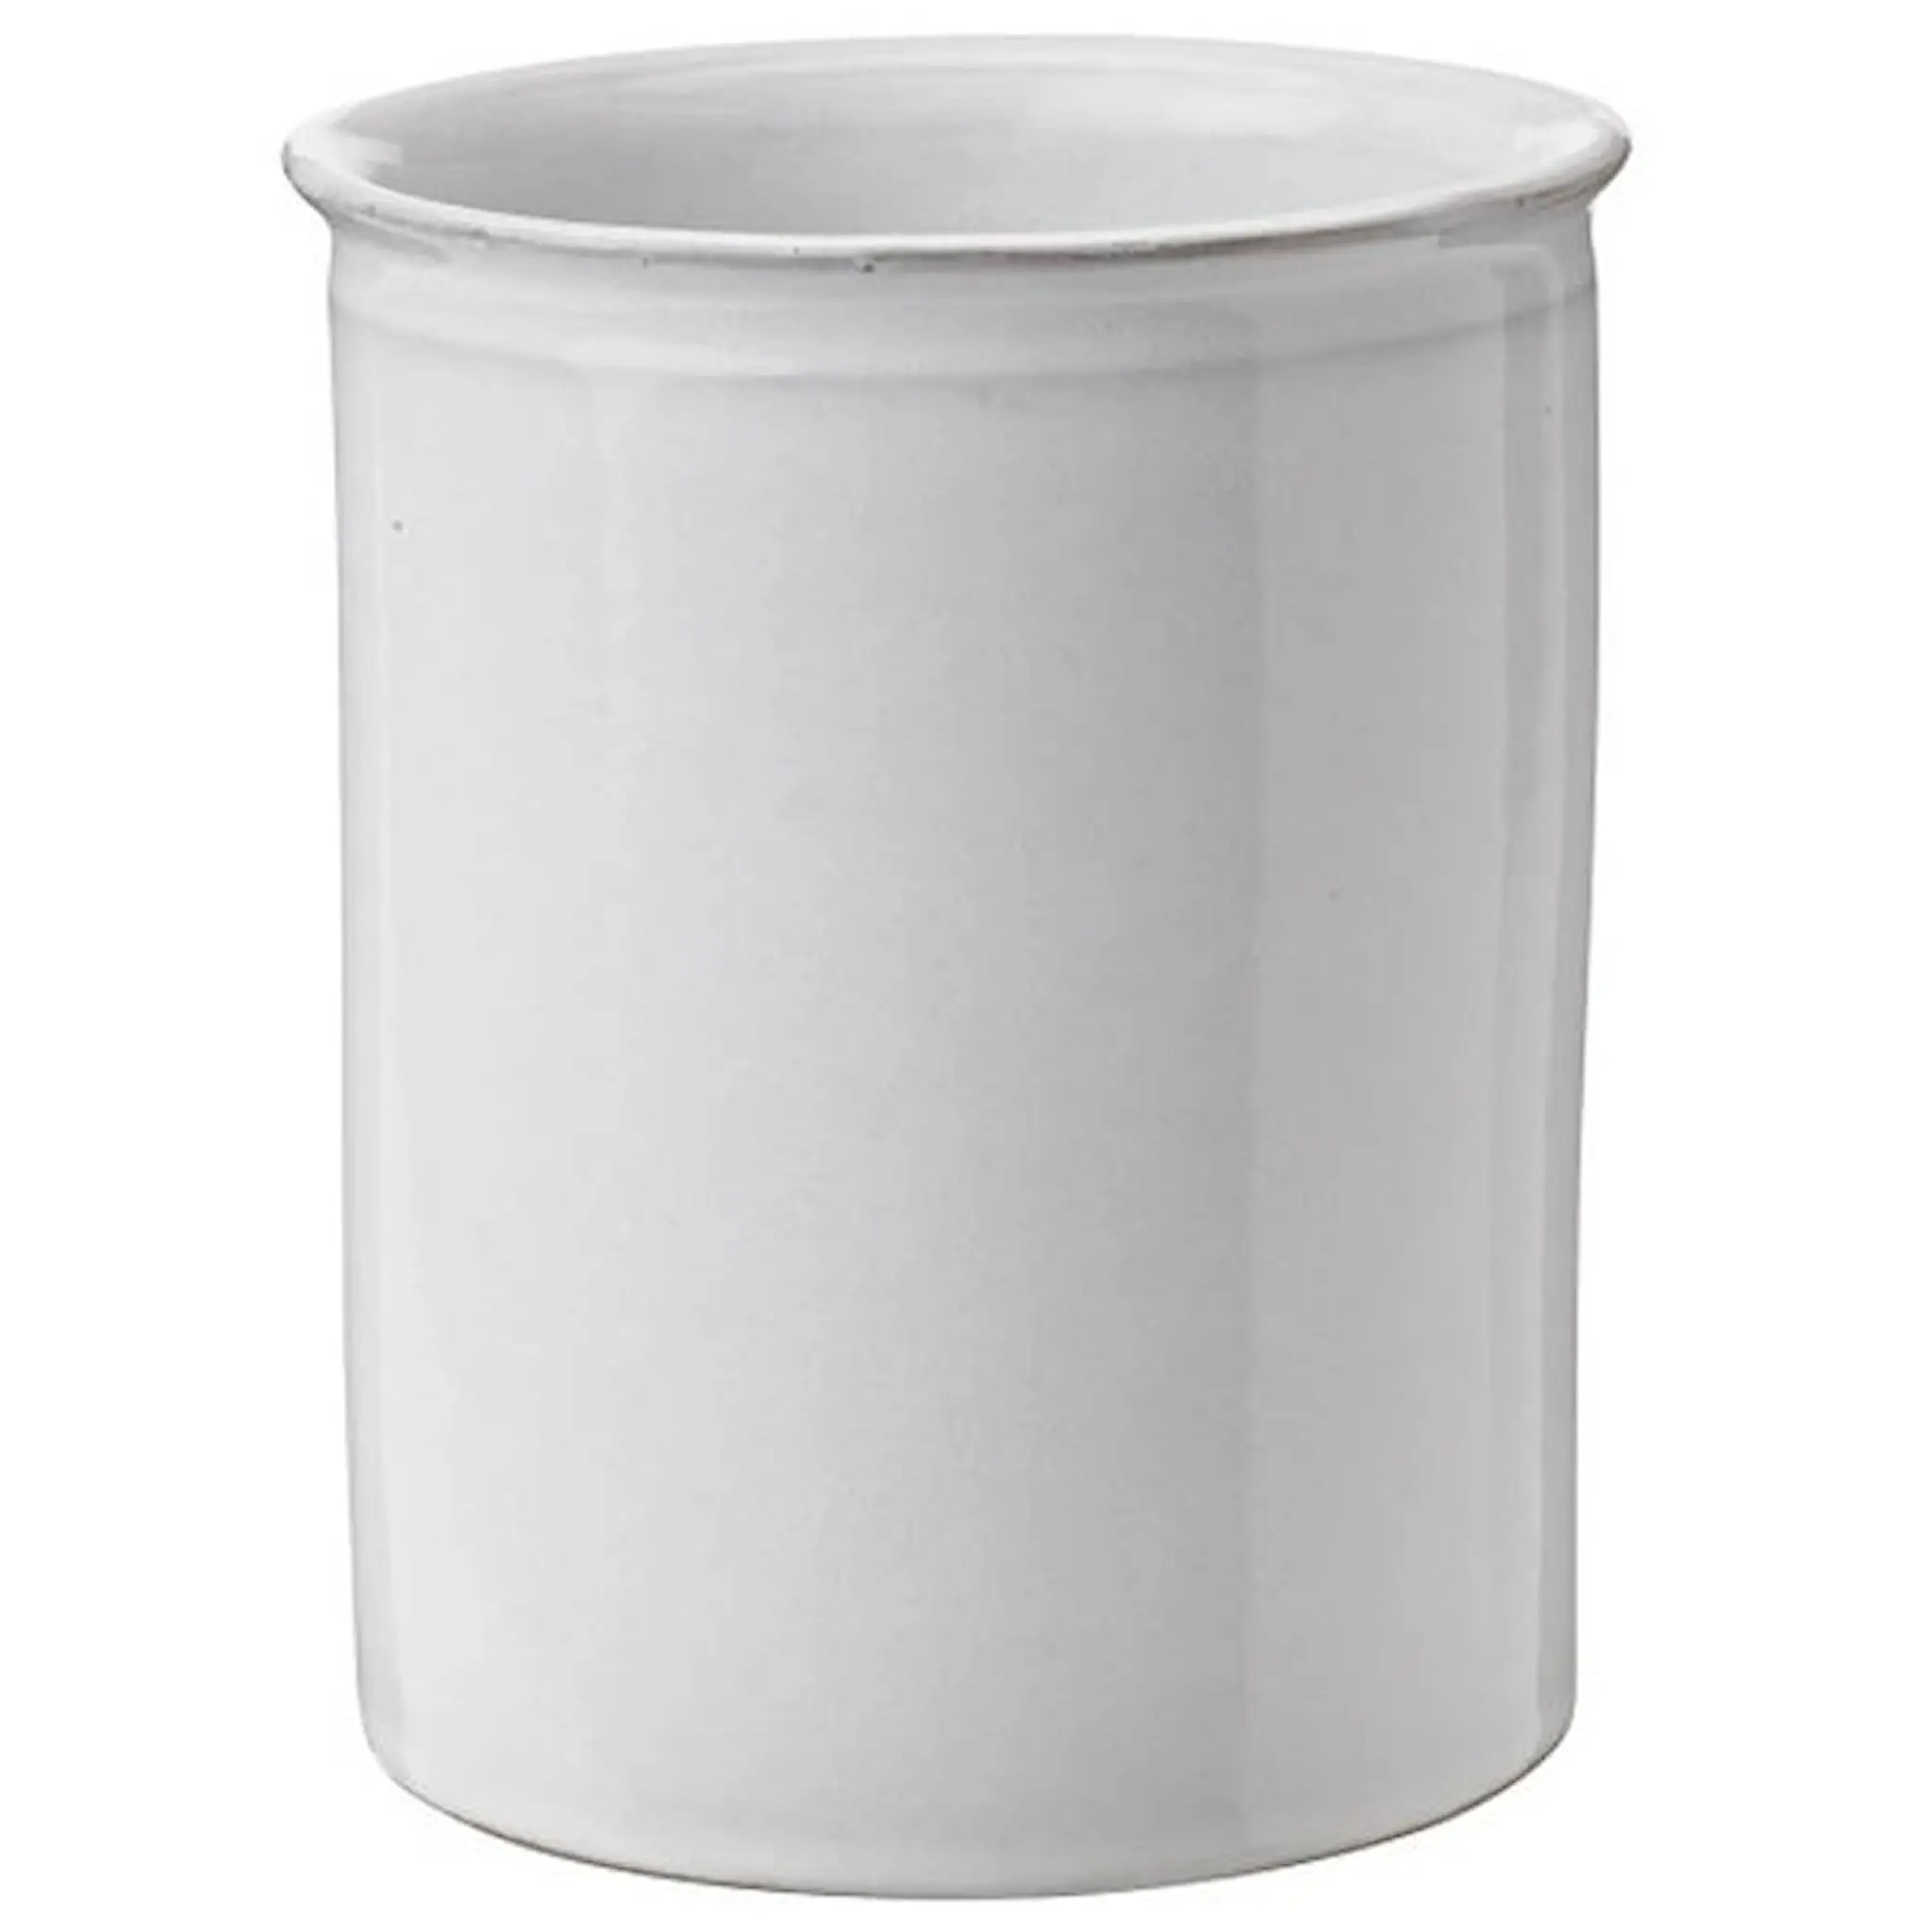 Knabstrup Keramik Knabstrup Keittiövälineteline 12,5 cm Valkoinen